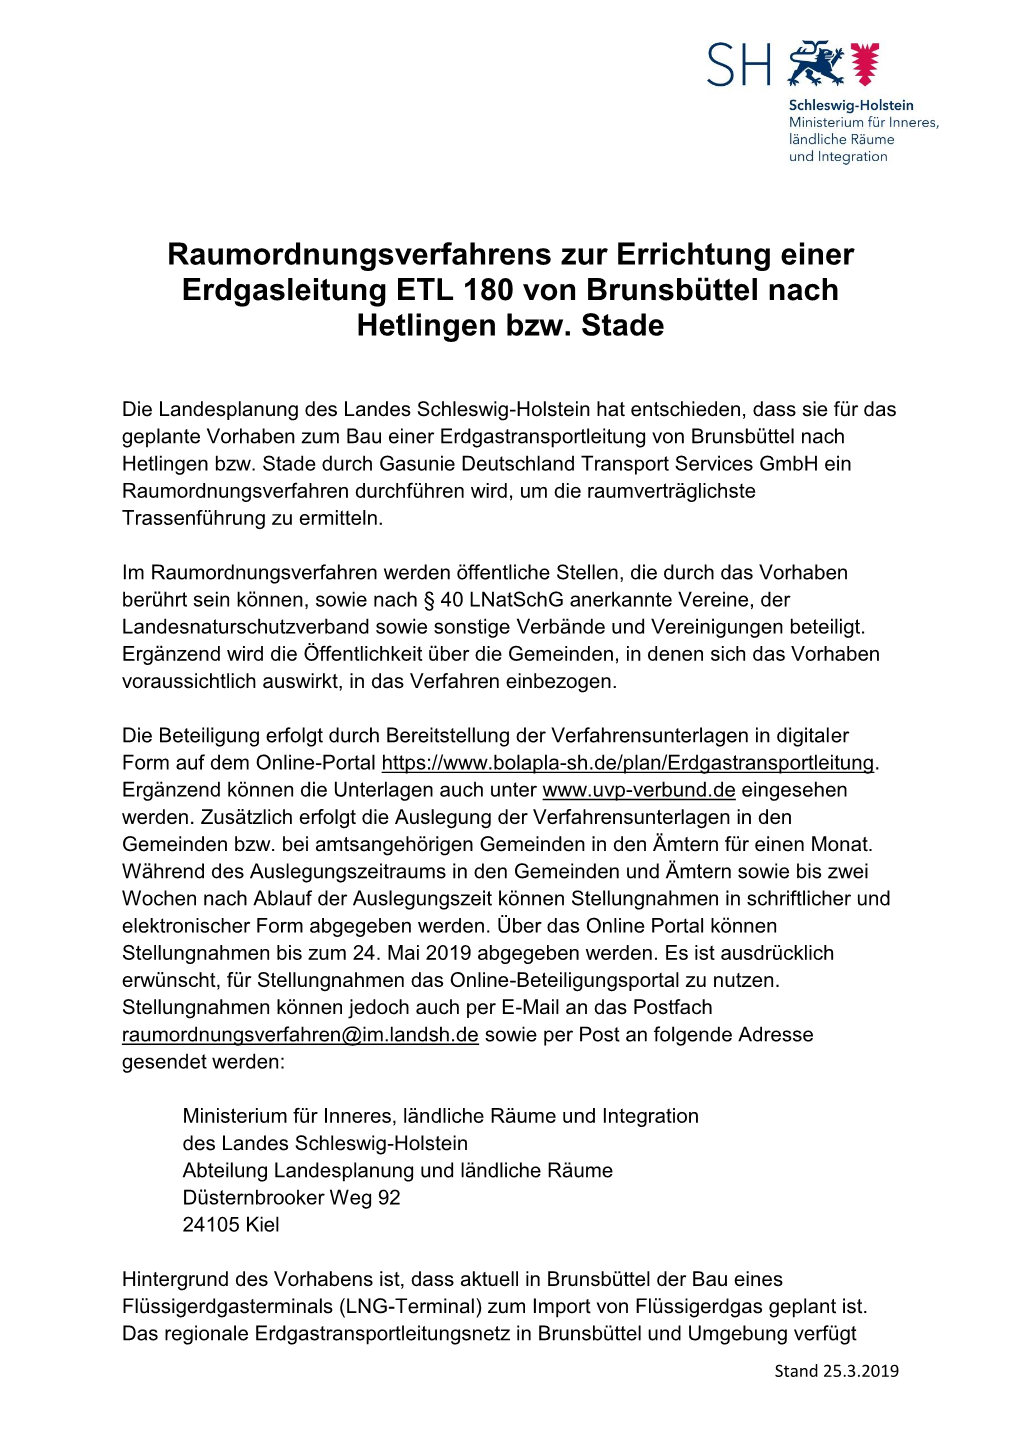 Raumordnungsverfahrens Zur Errichtung Einer Erdgasleitung ETL 180 Von Brunsbüttel Nach Hetlingen Bzw